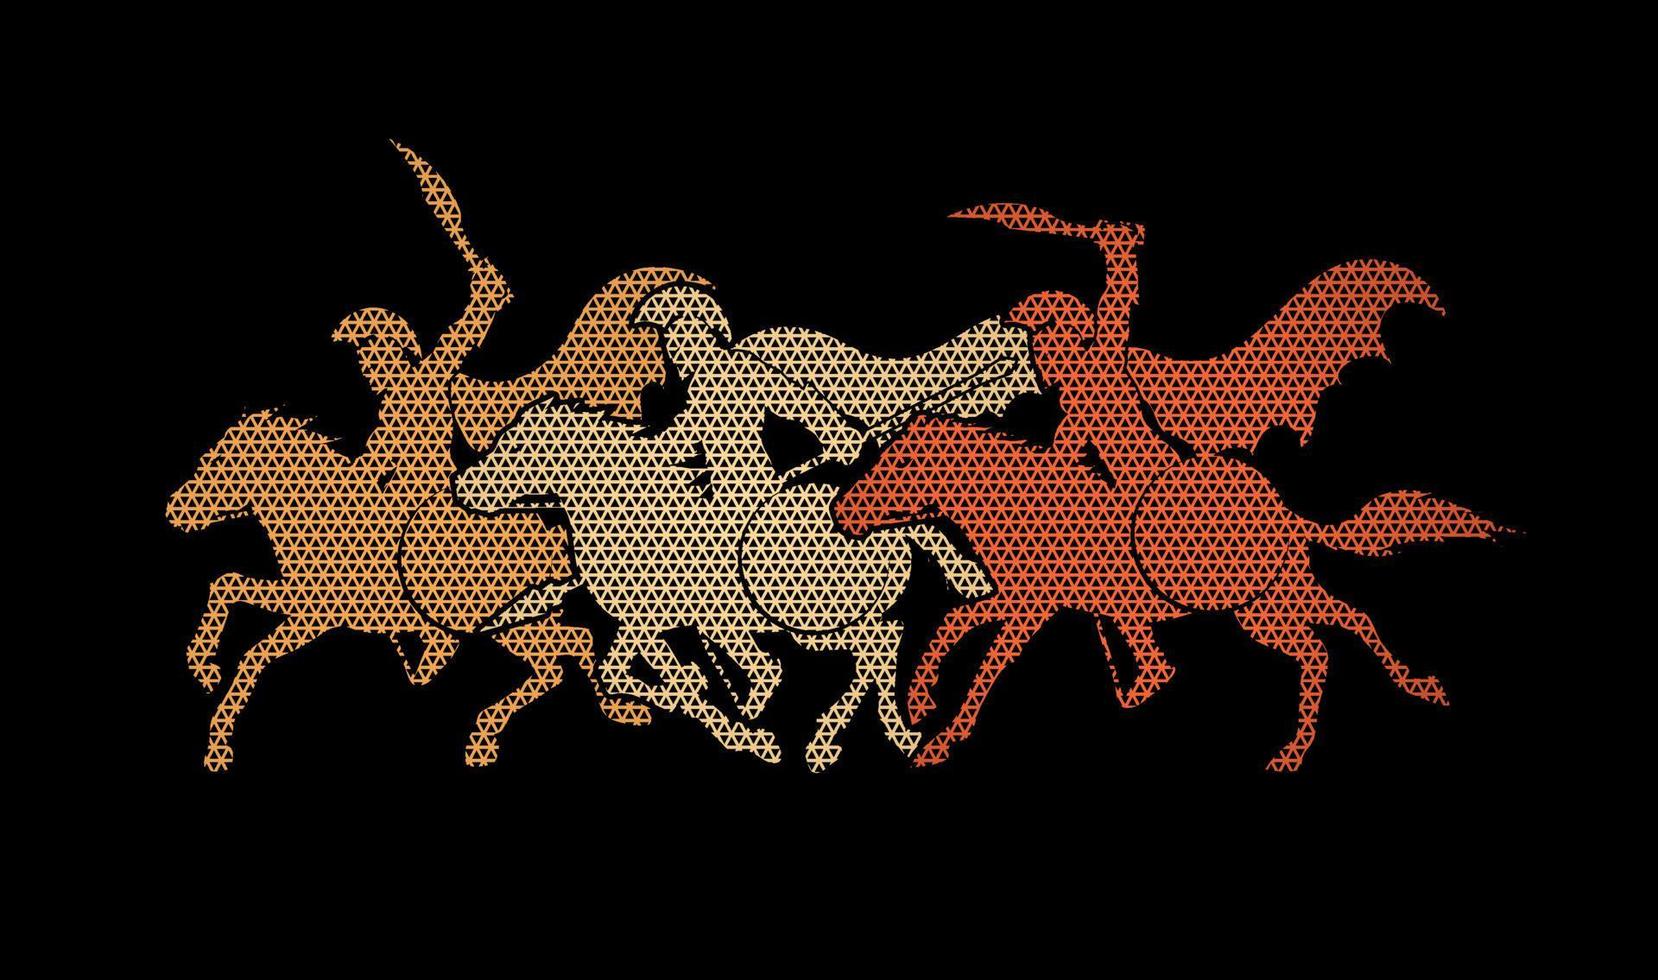 abstrakt spartansk krigare ridning hästar vektor